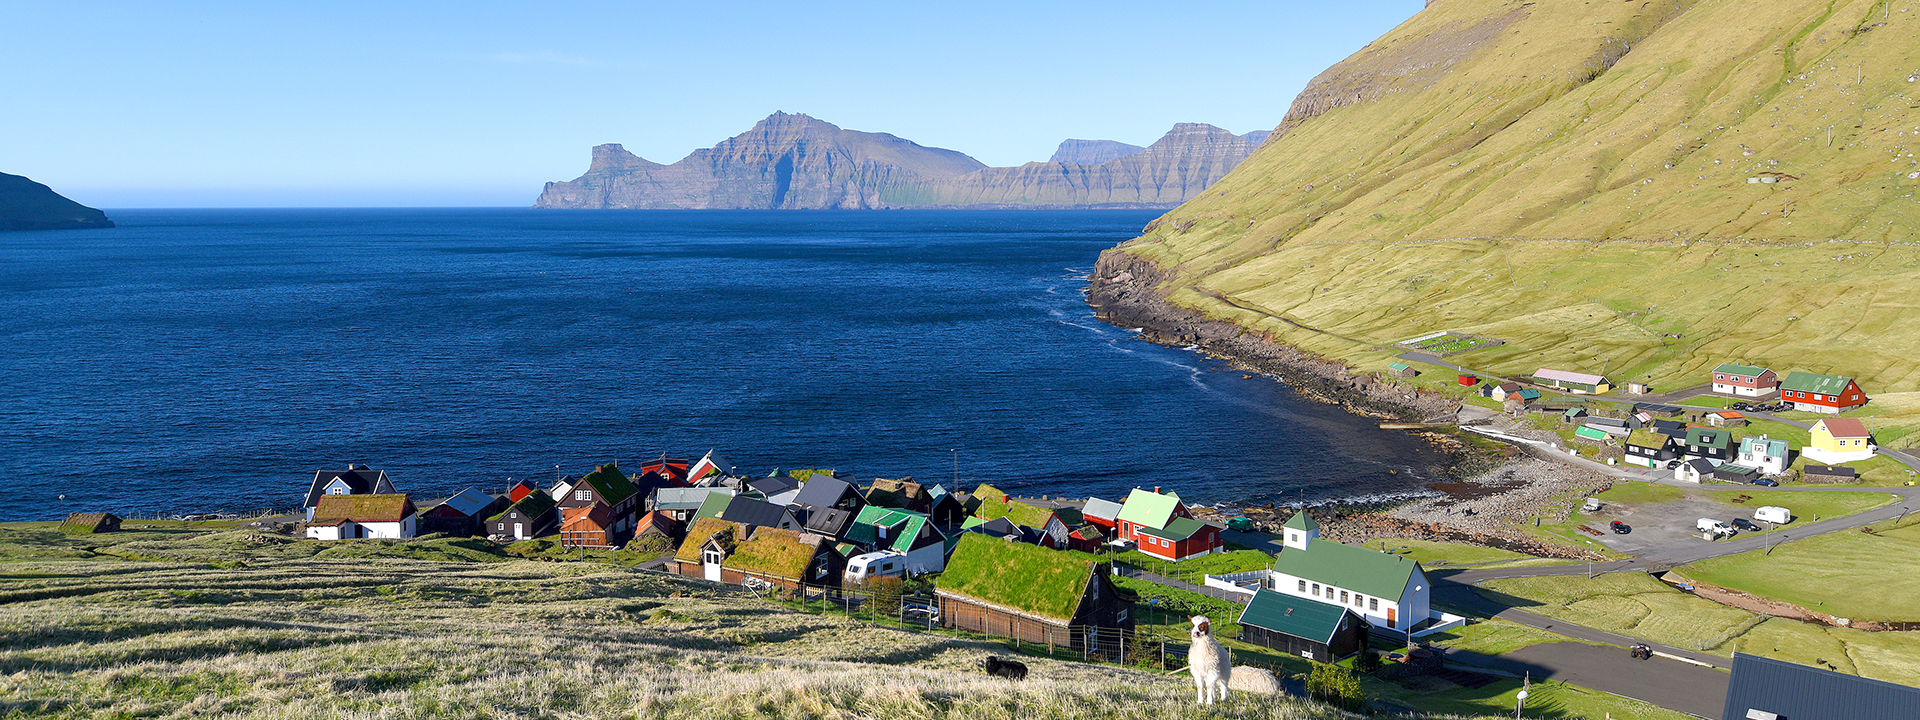 Blick auf ein malerisches Fischerdorf an der Küste der Färöer Inseln.